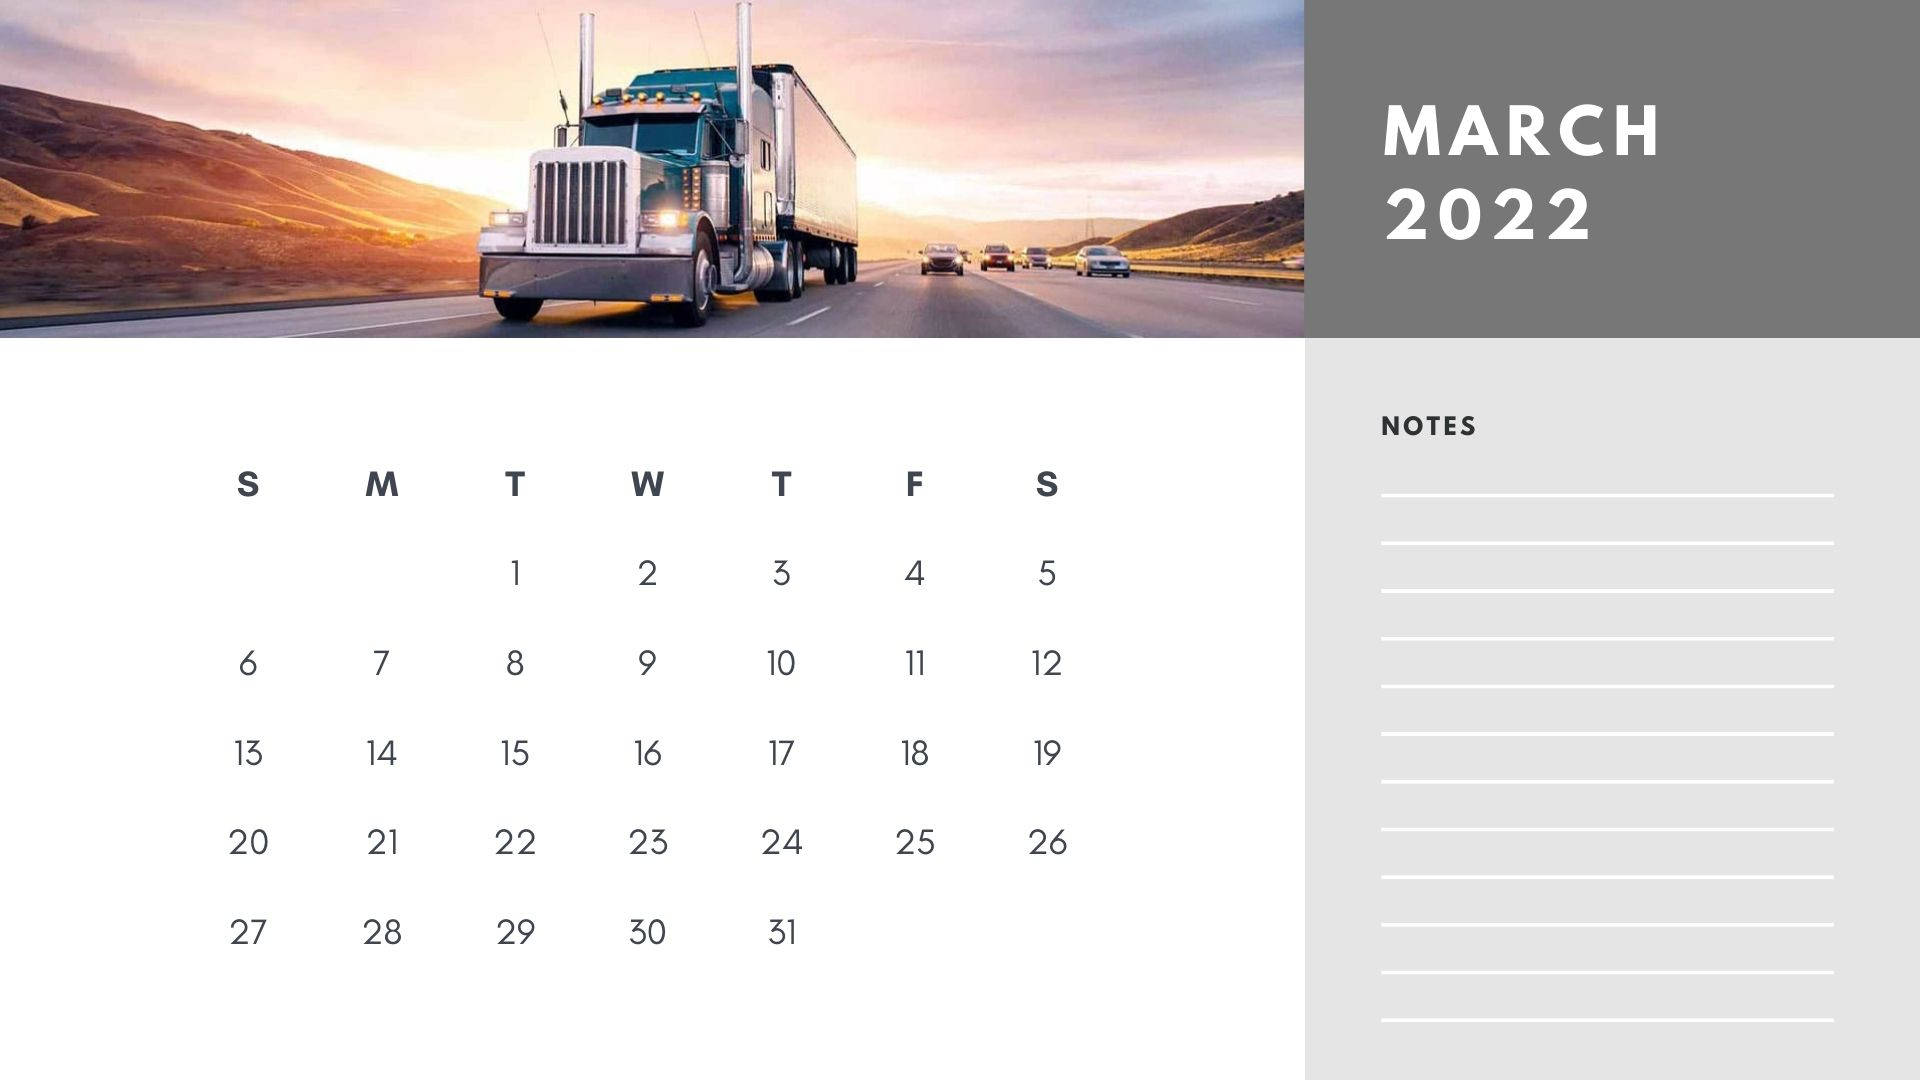 March 2022 Calendar Notes